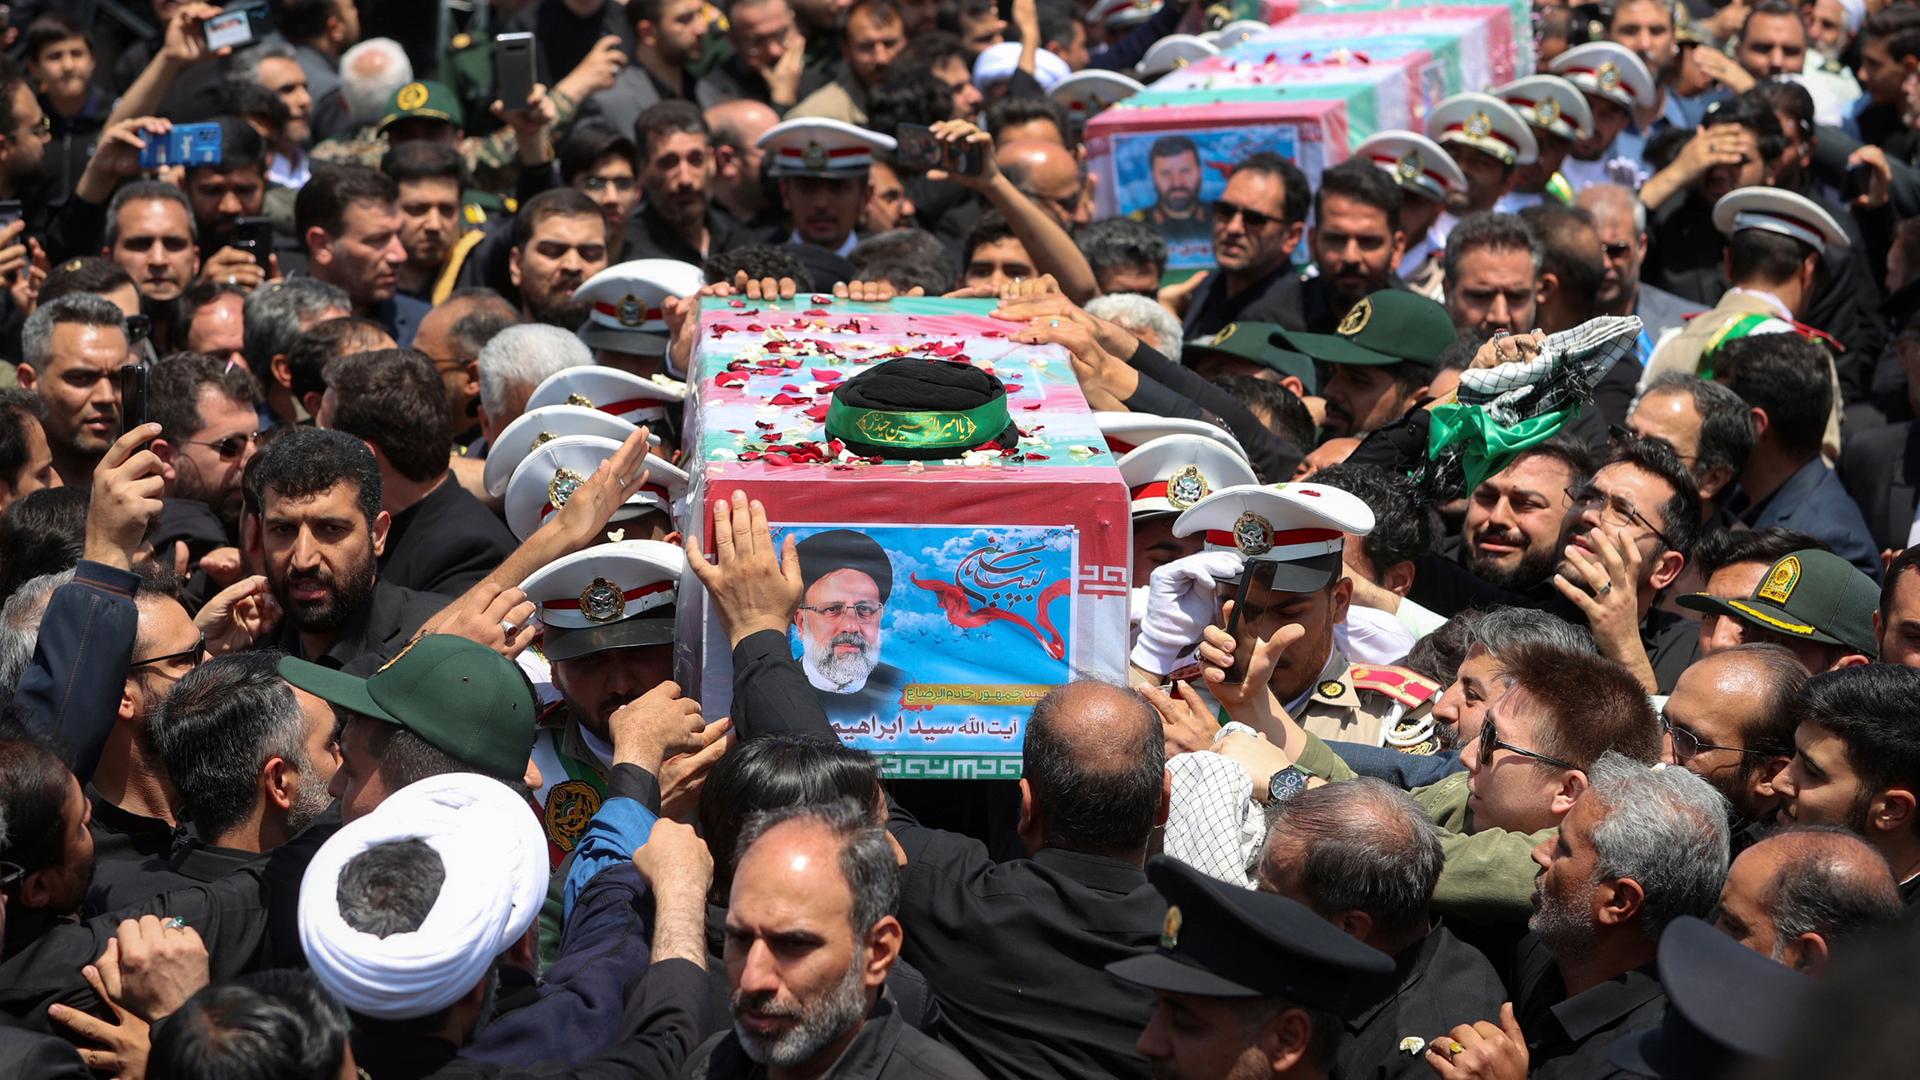 Der in eine Flagge gehüllte Sarg mit den sterblichen Überresten des tödlich verunglückten Präsidenten Ebrahim Raisi wird durch eine Menschenmenge getragen.